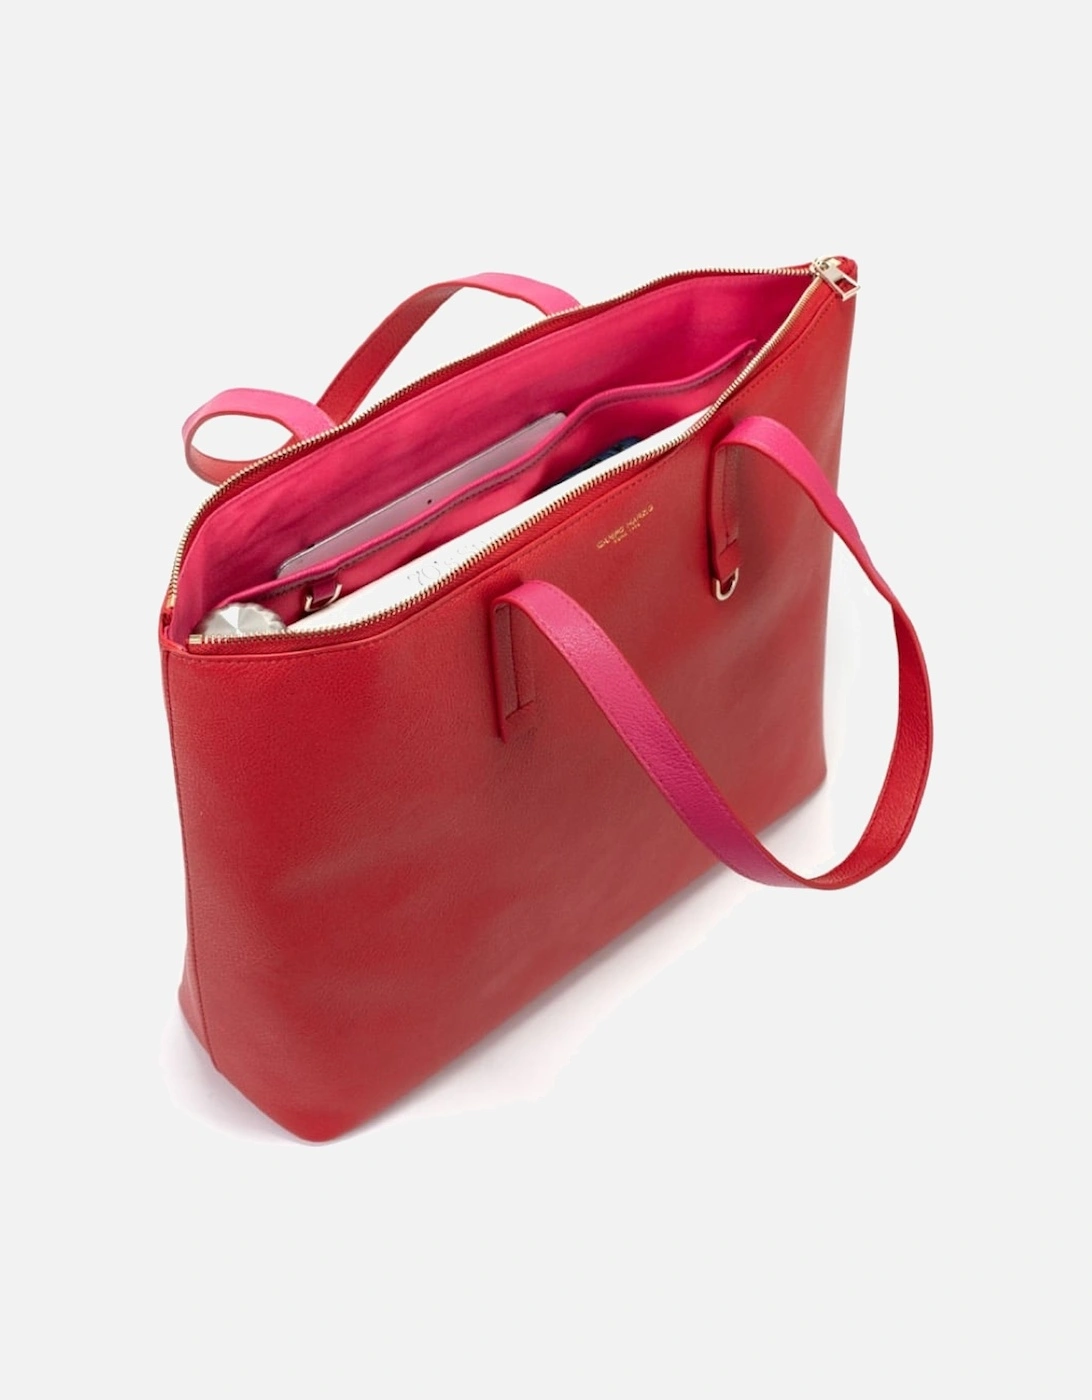 Winona Shopping Bag - Cherry Red Fuchsia